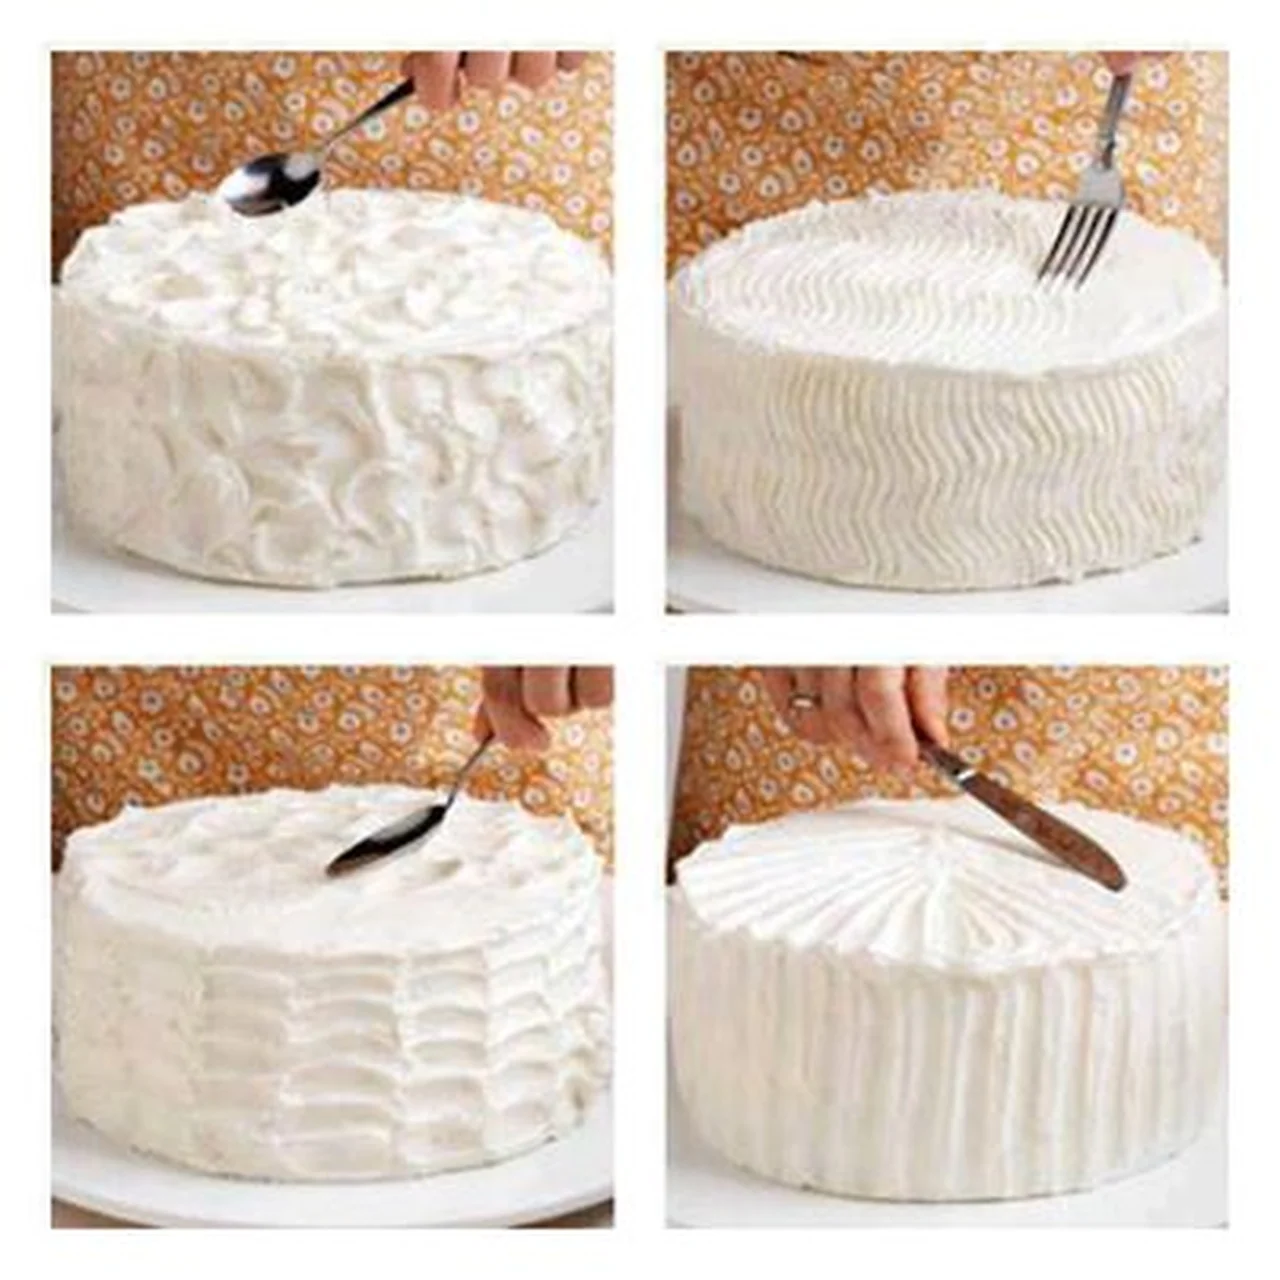 Jak dekorować torty